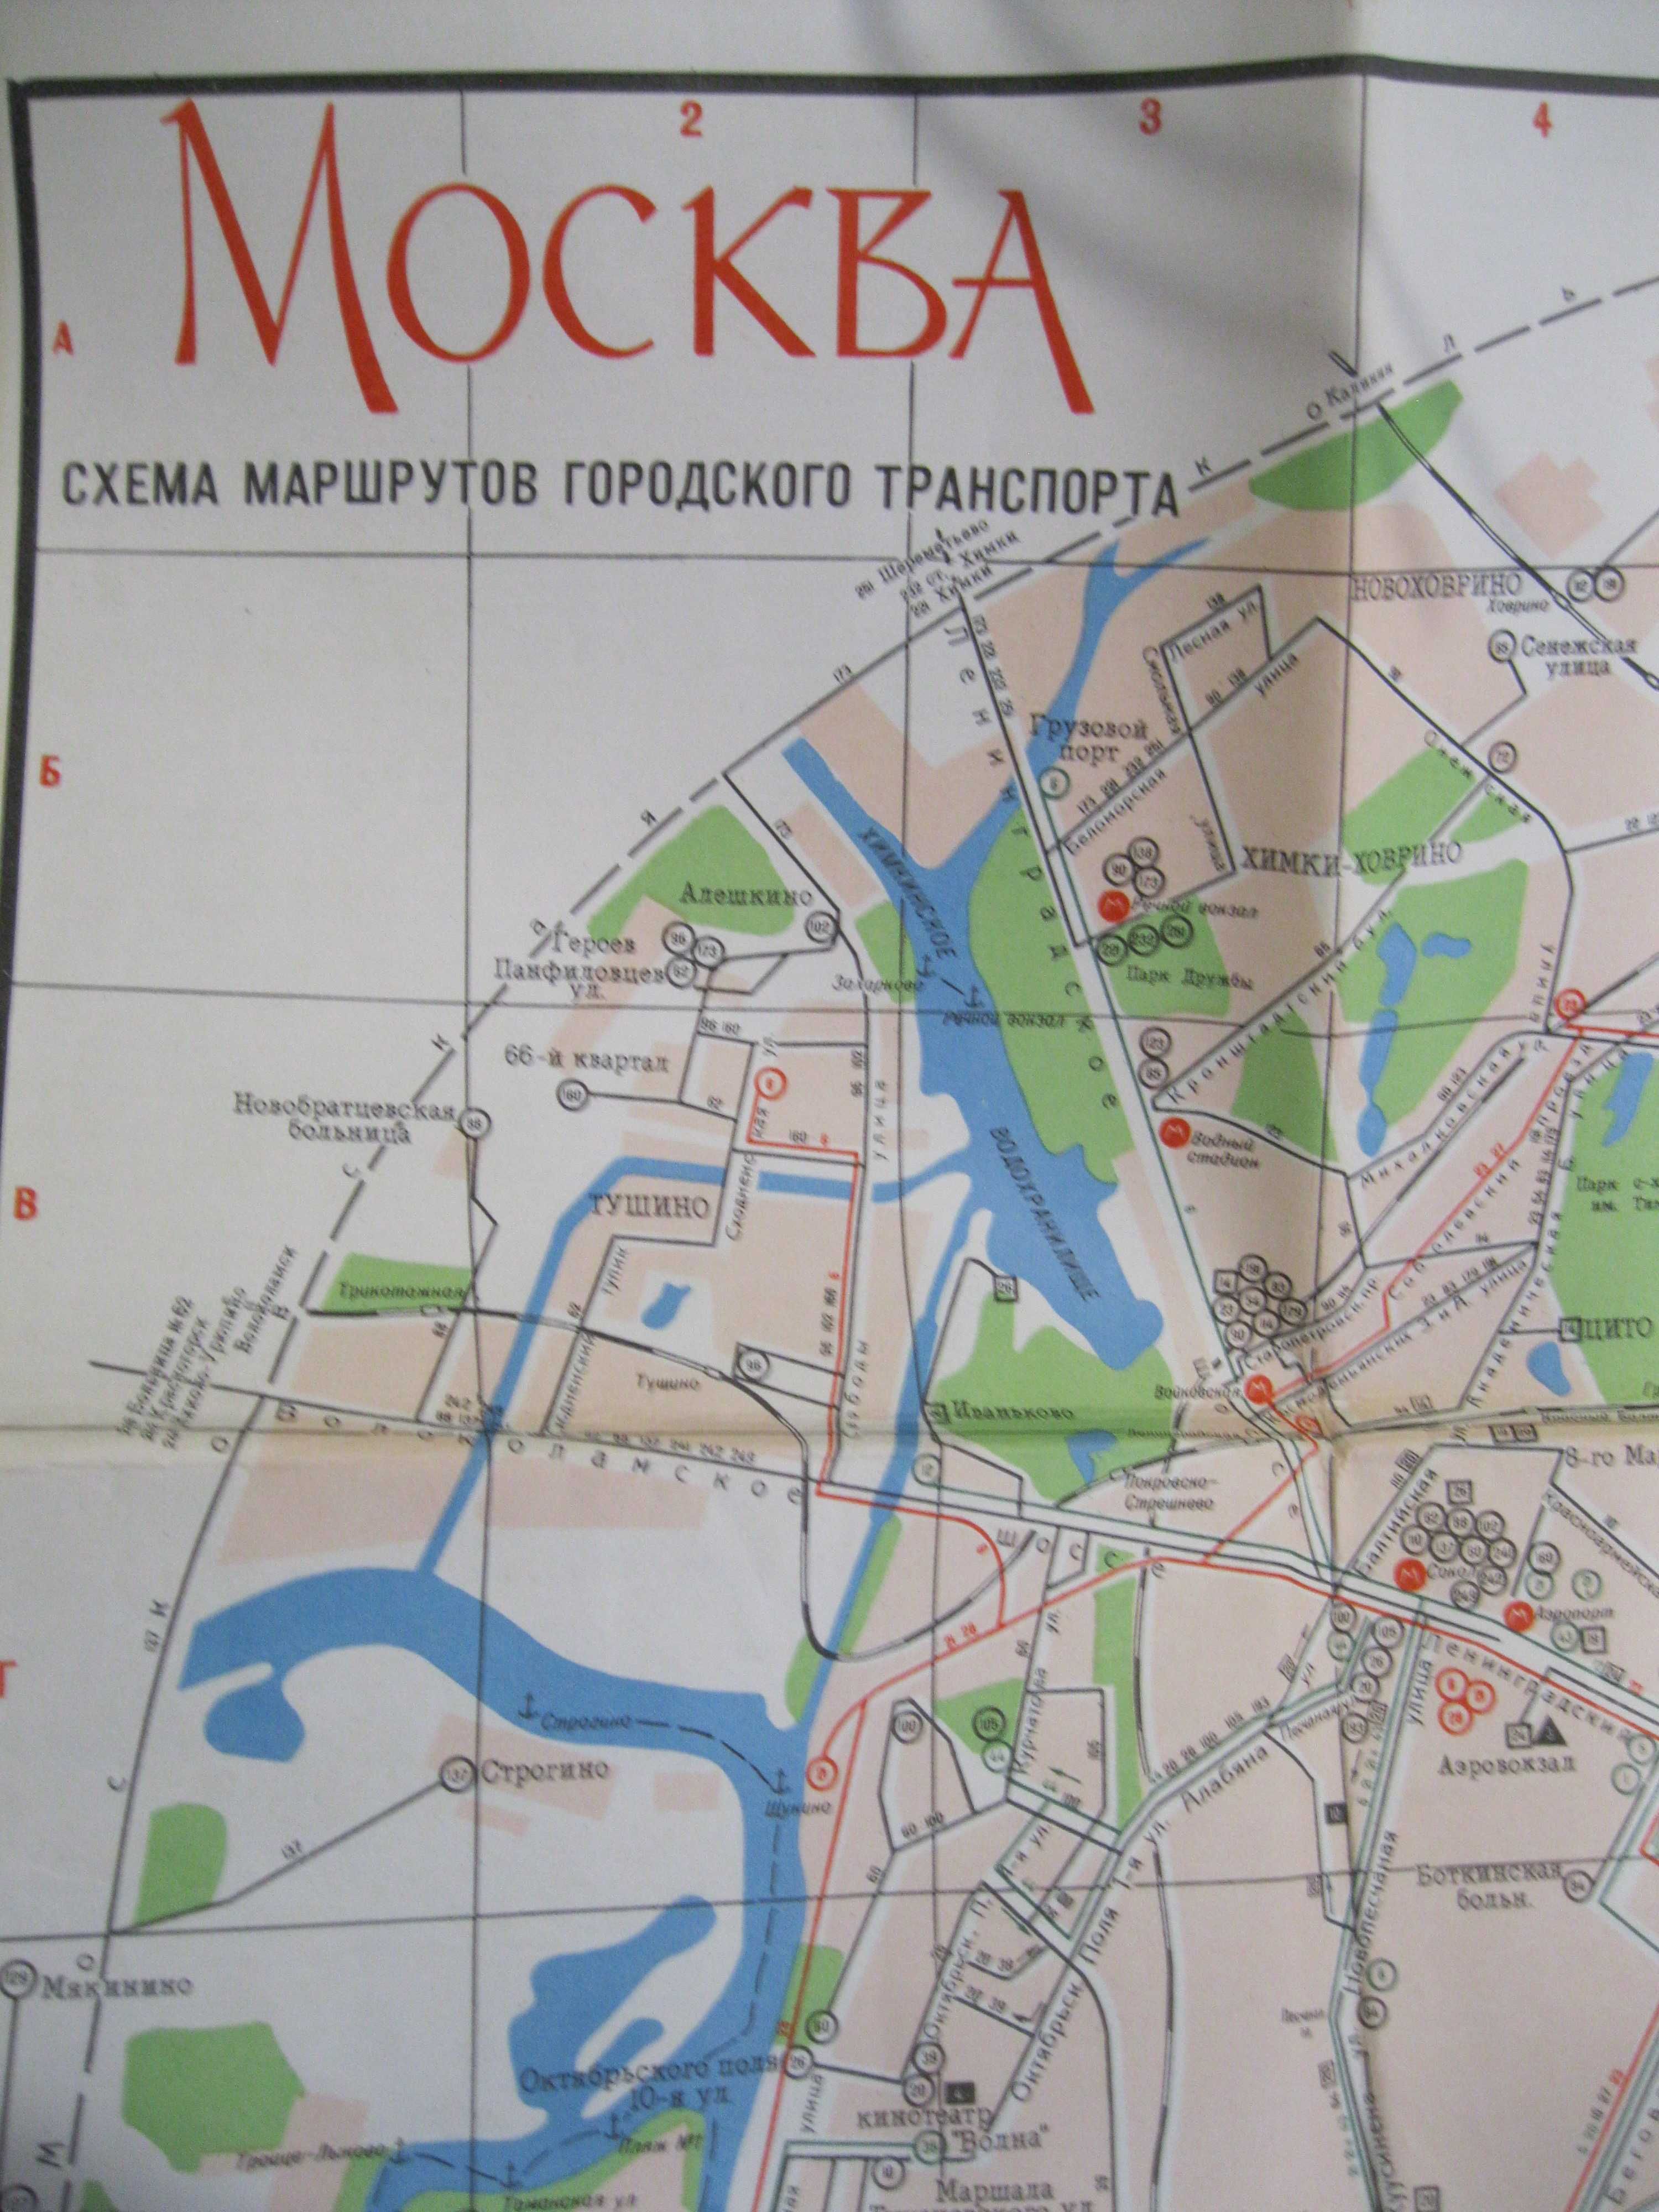 Москва Схема маршрутов городского транспорта